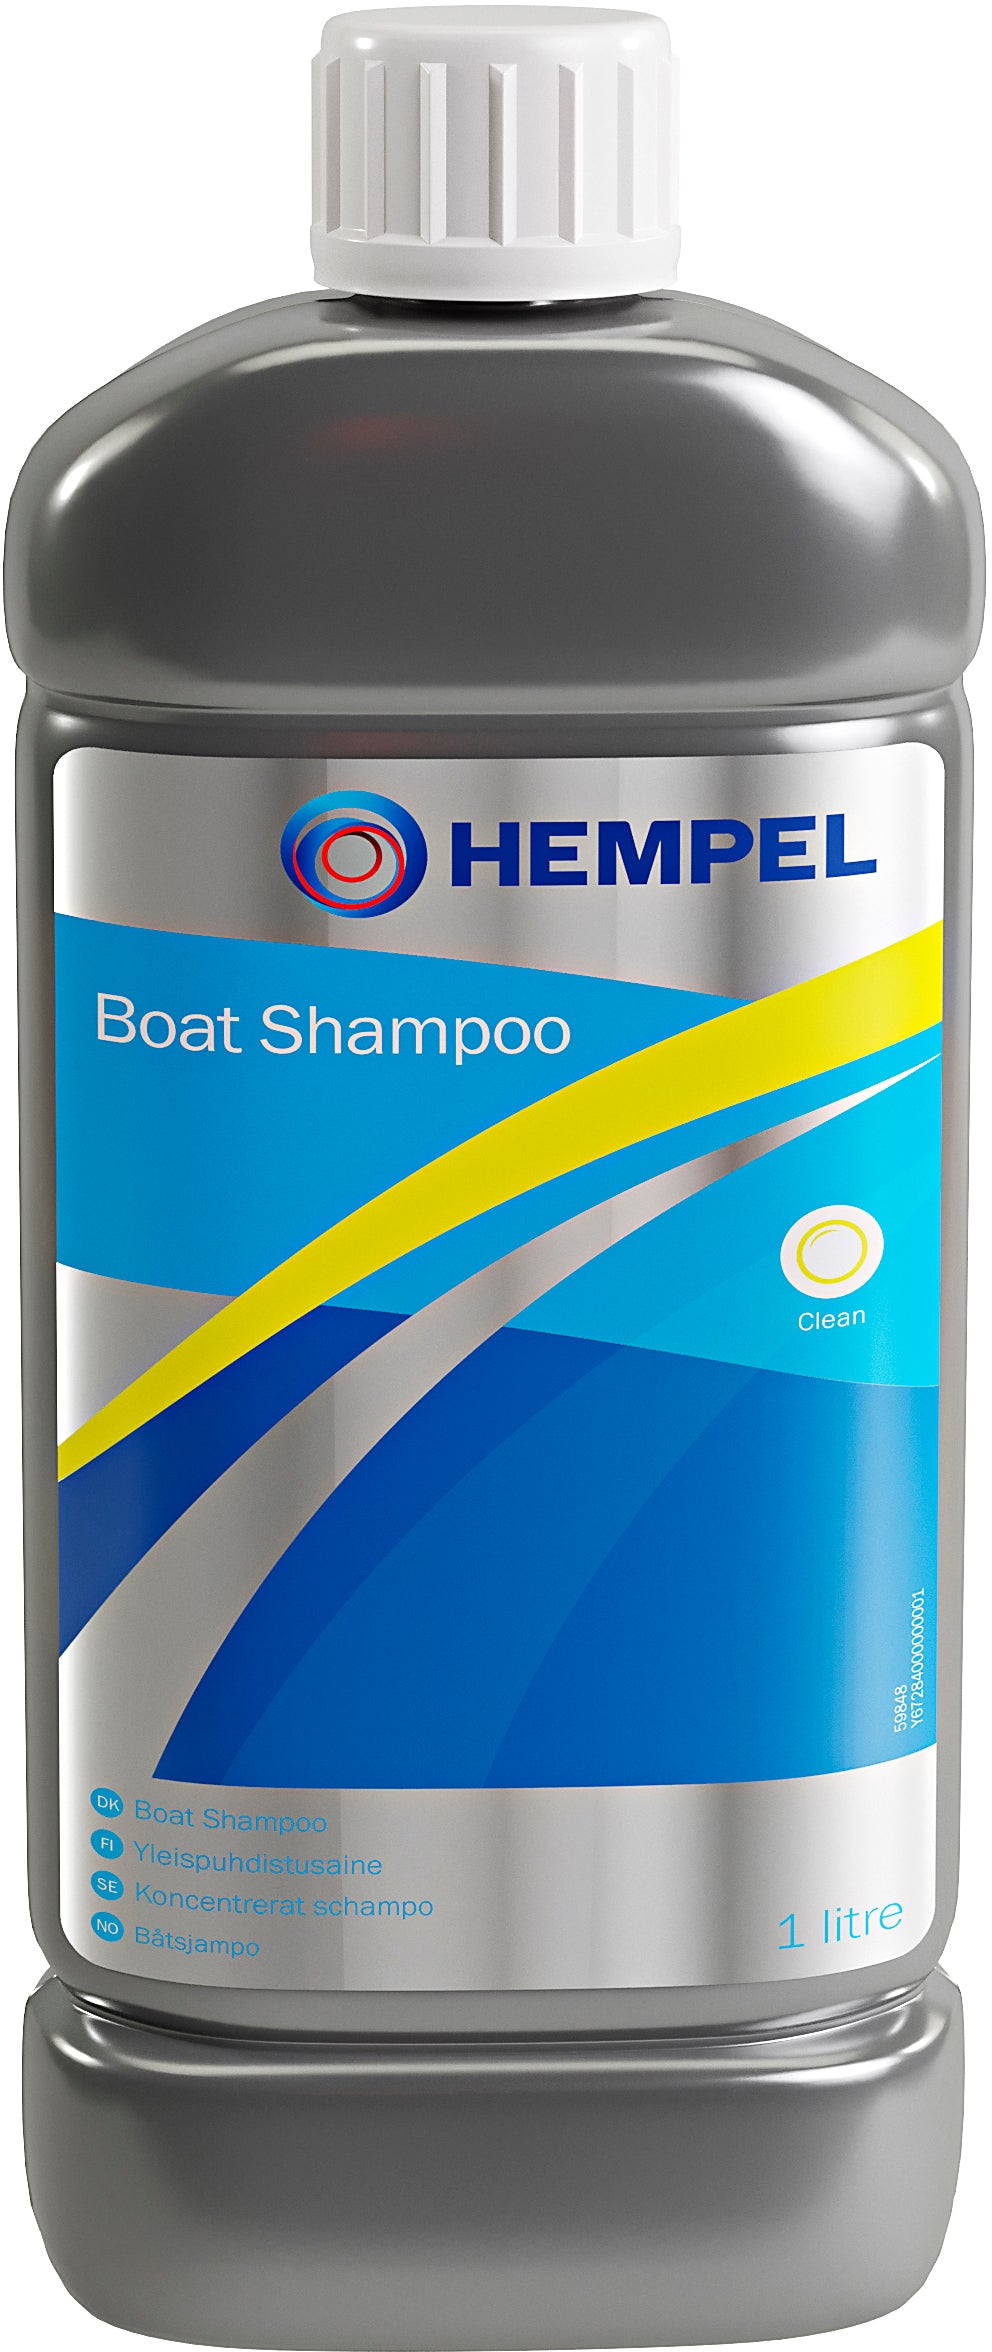 Boat Shampoo 67284 1 ltr.